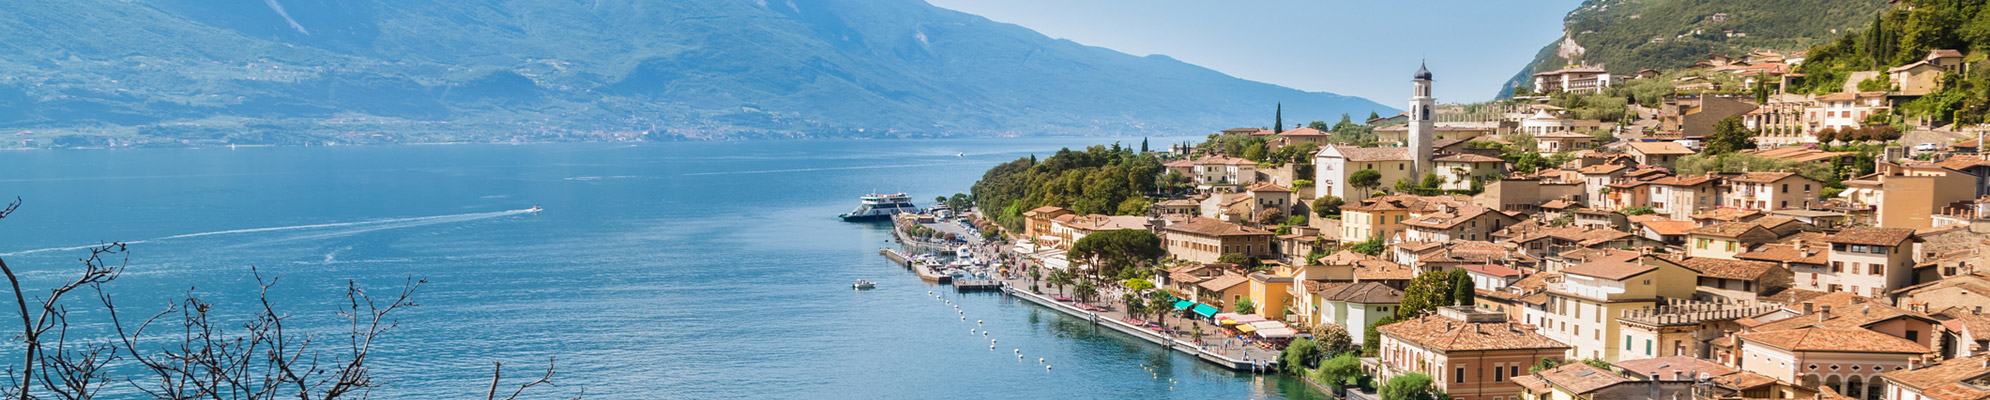 Villaggio ai piedi del Lago di Garda in Italia